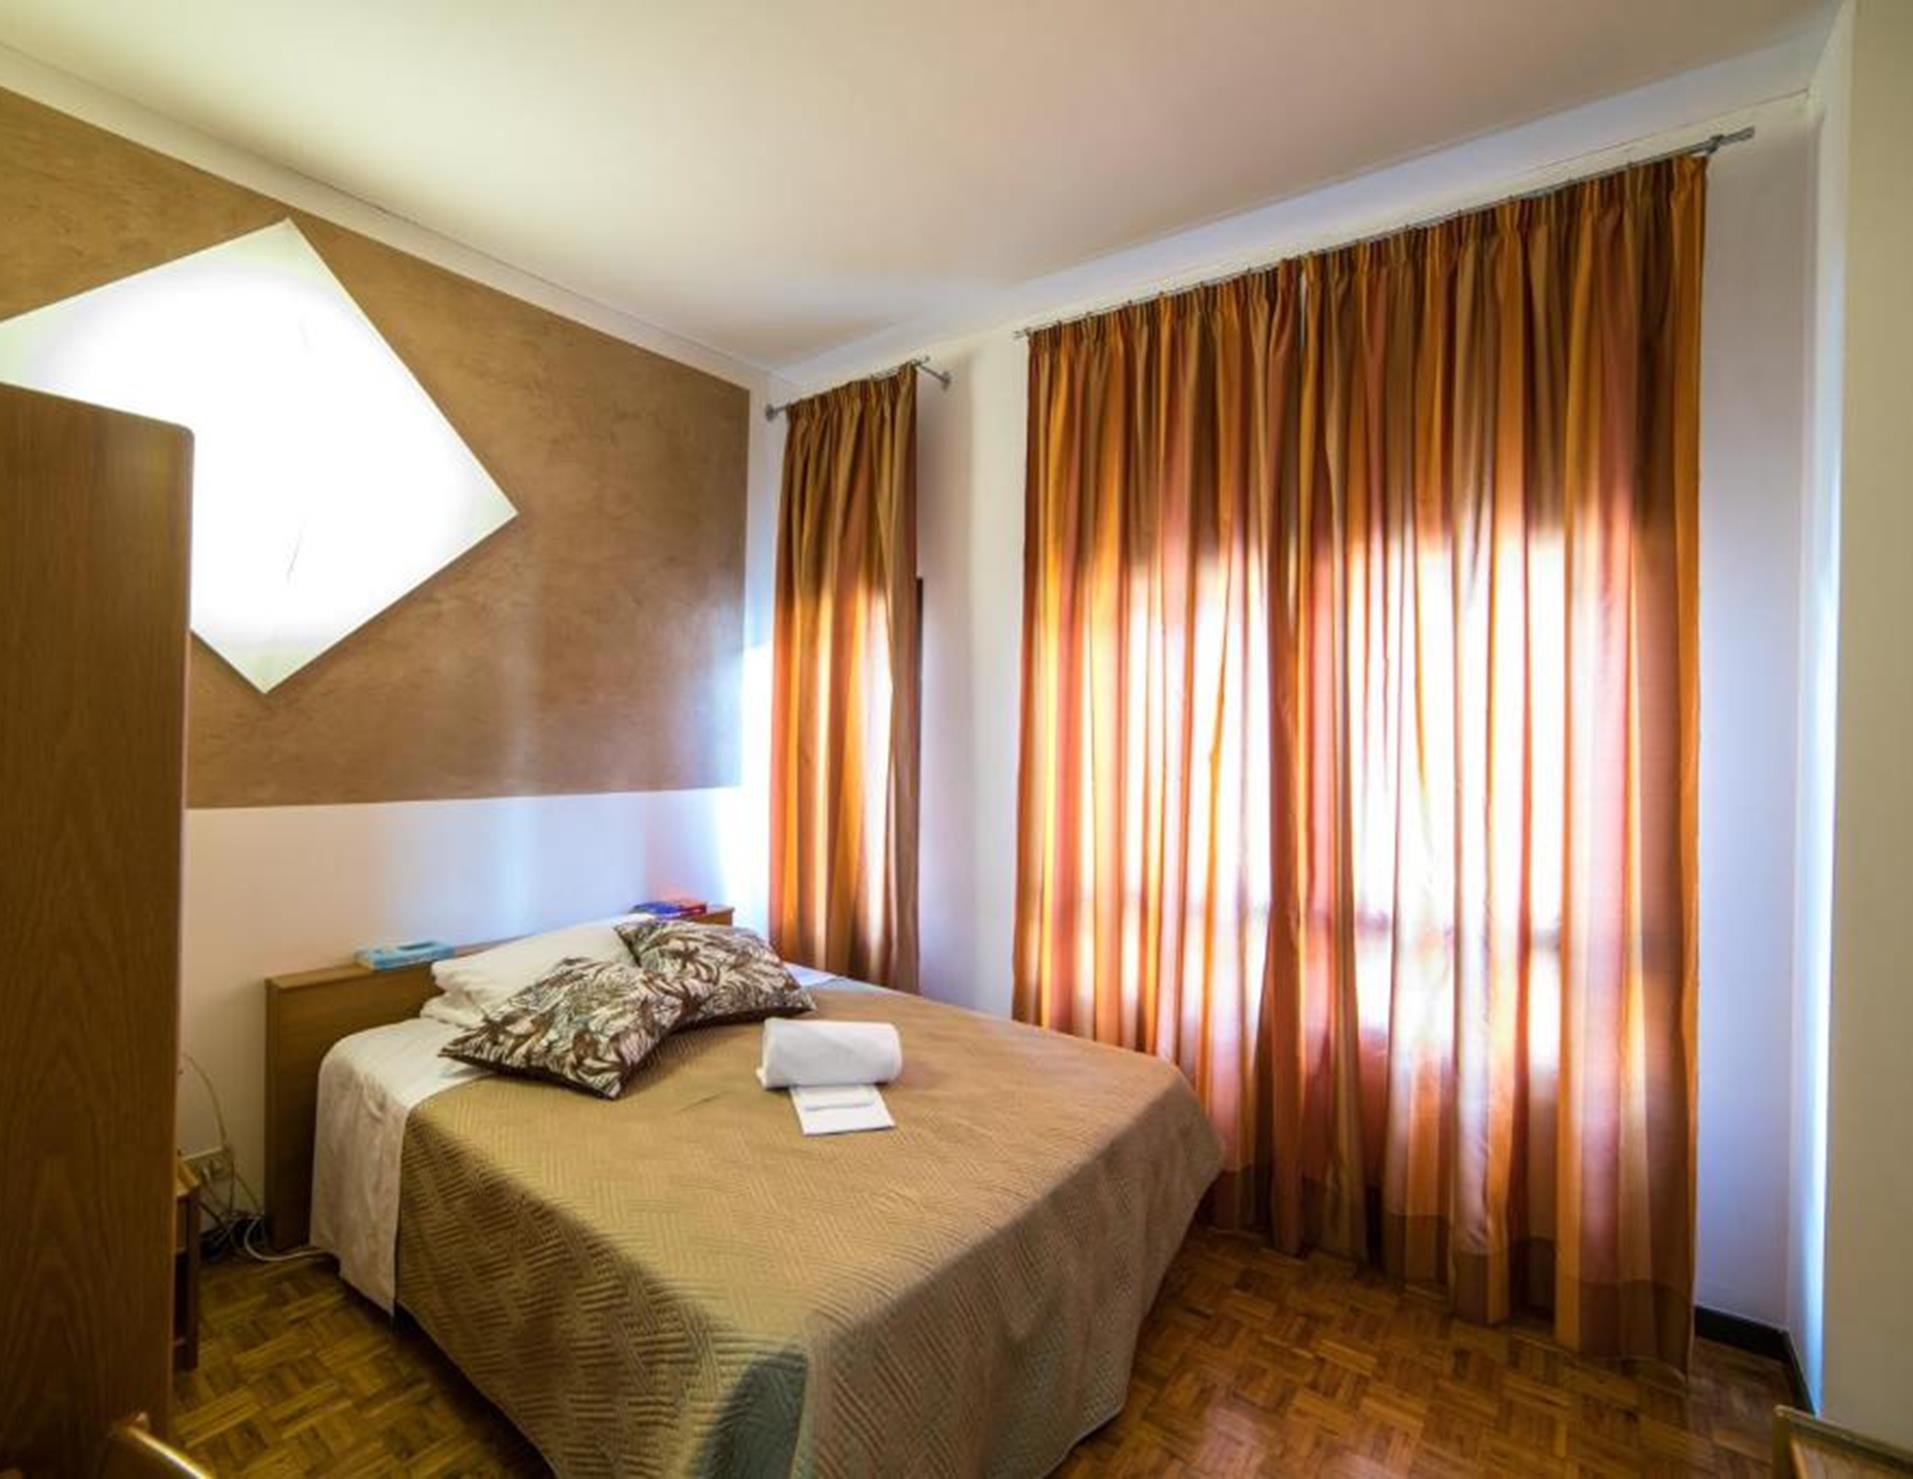 Hotel La Vecchia Cartiera - Room 9